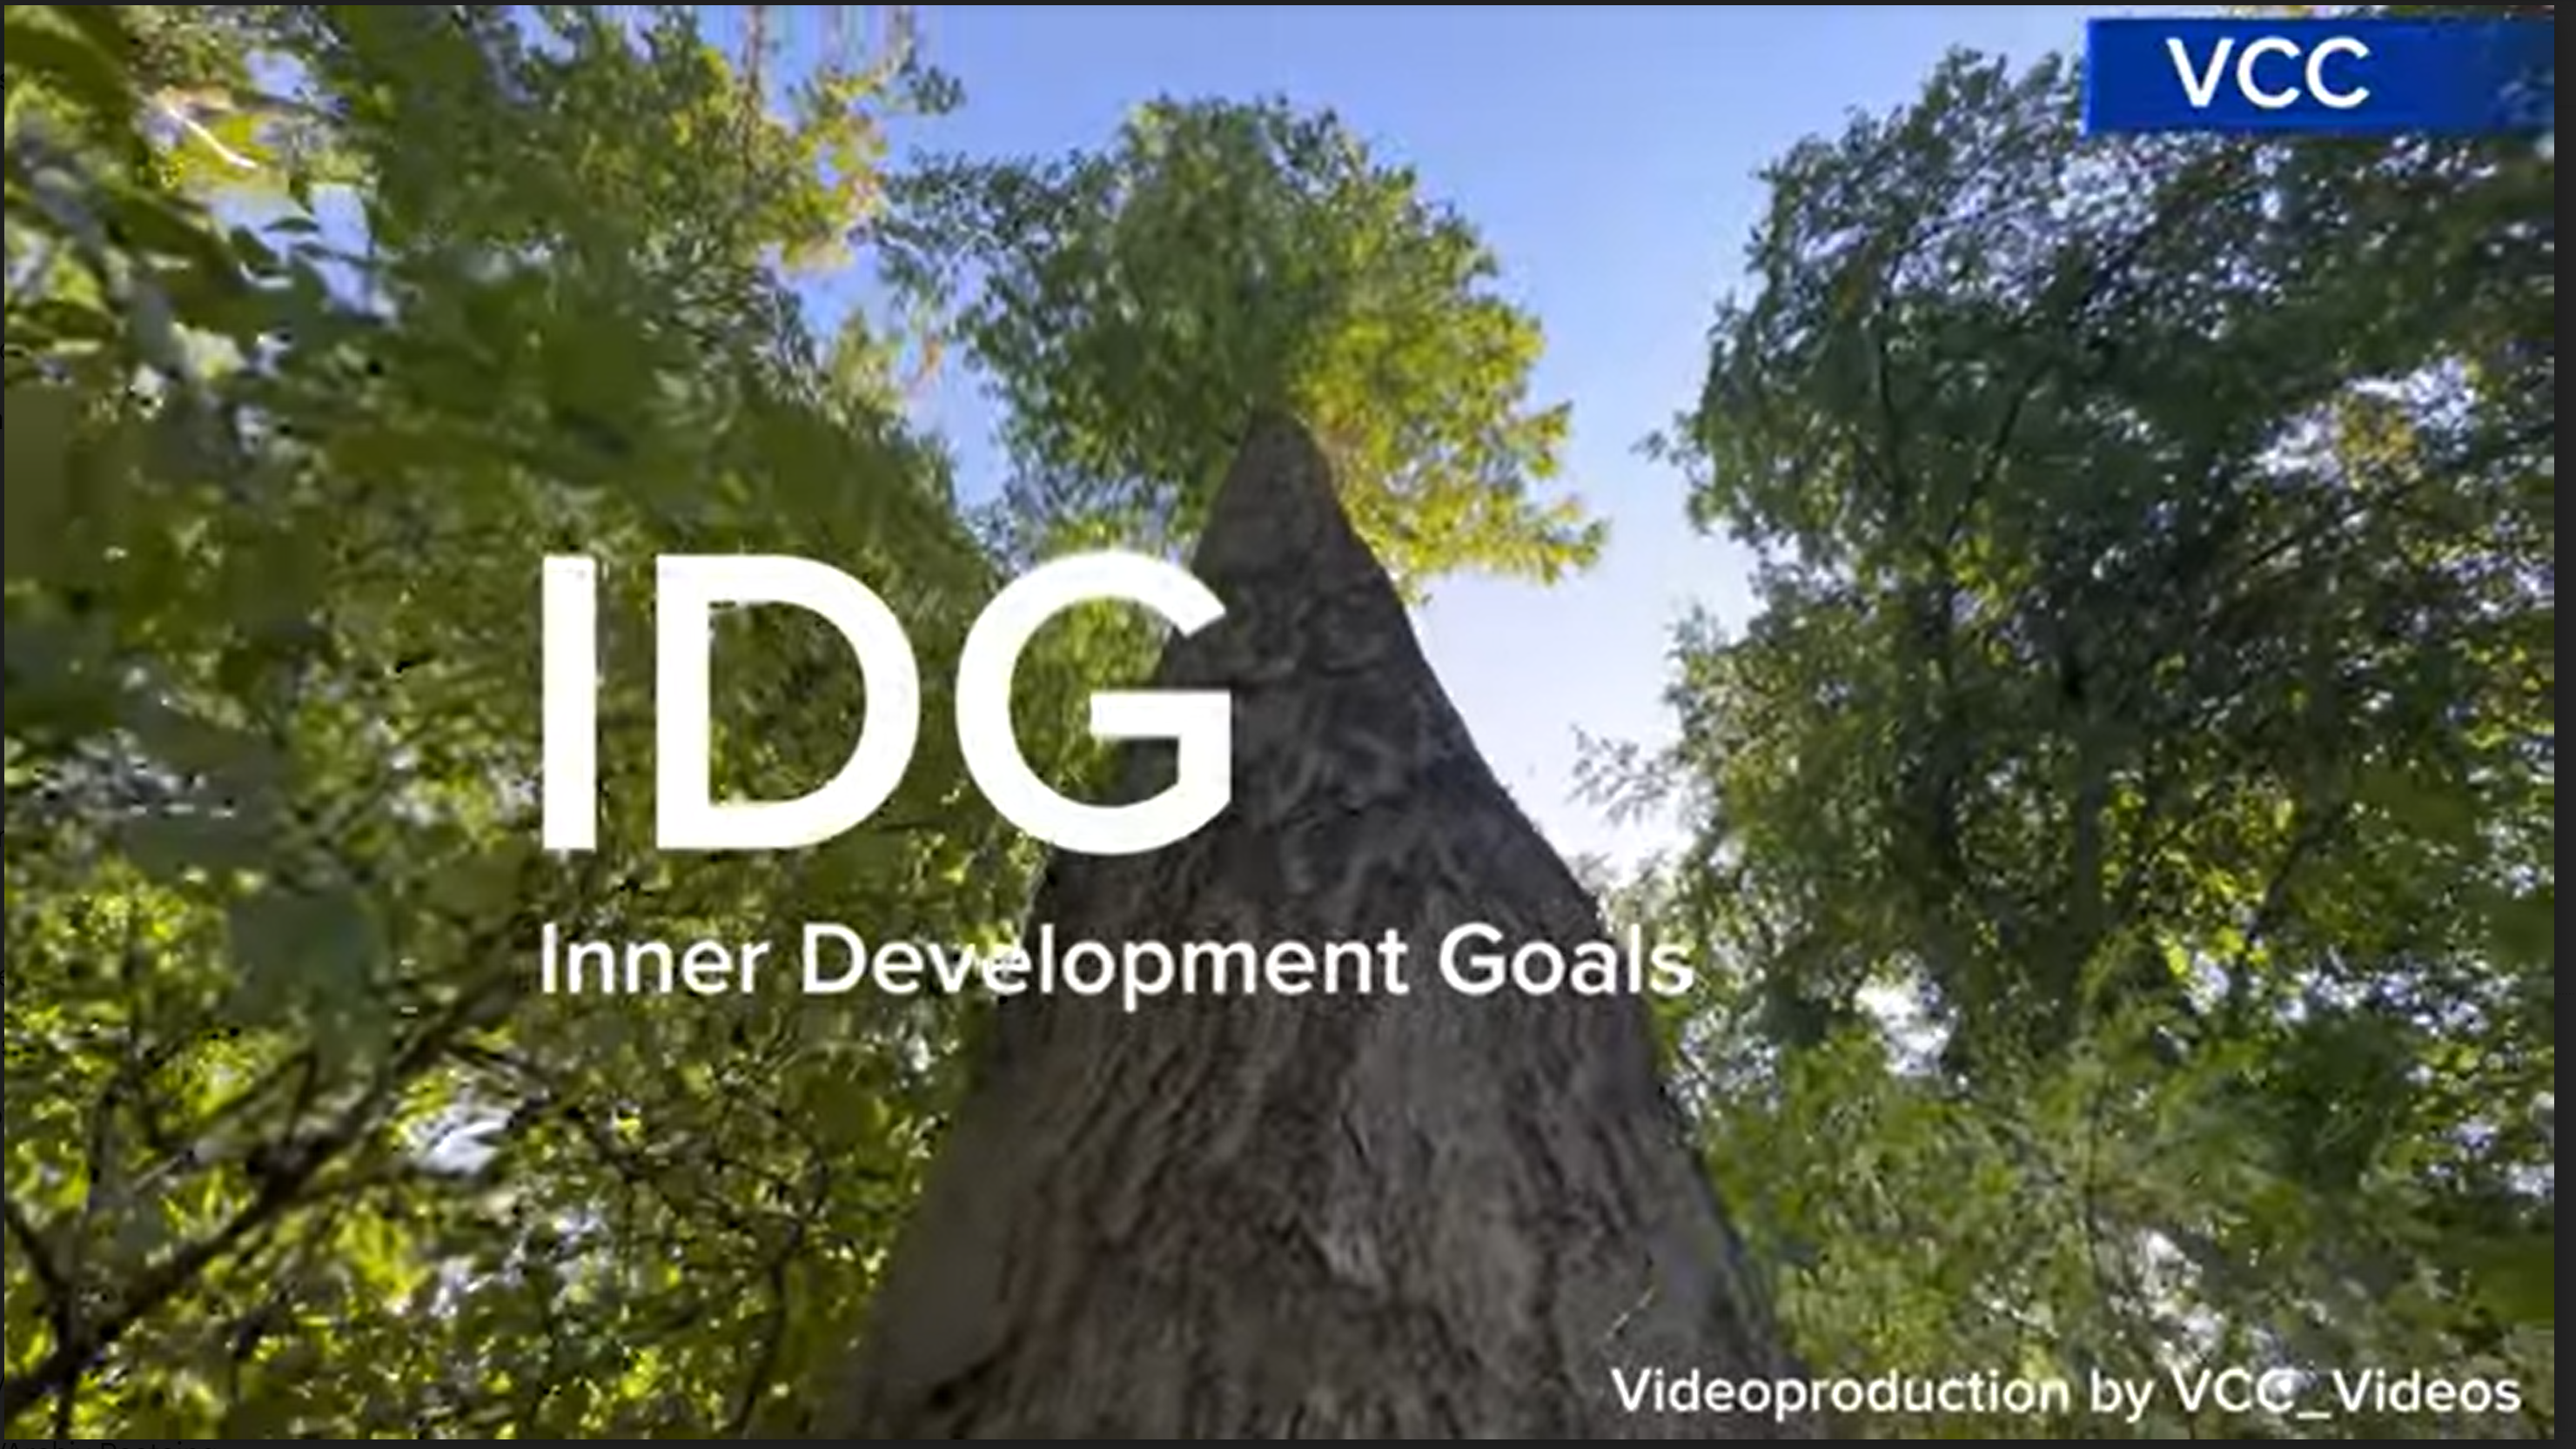 IDG: Innere Entwicklung für nachhaltige Transformation – in und mit der Natur